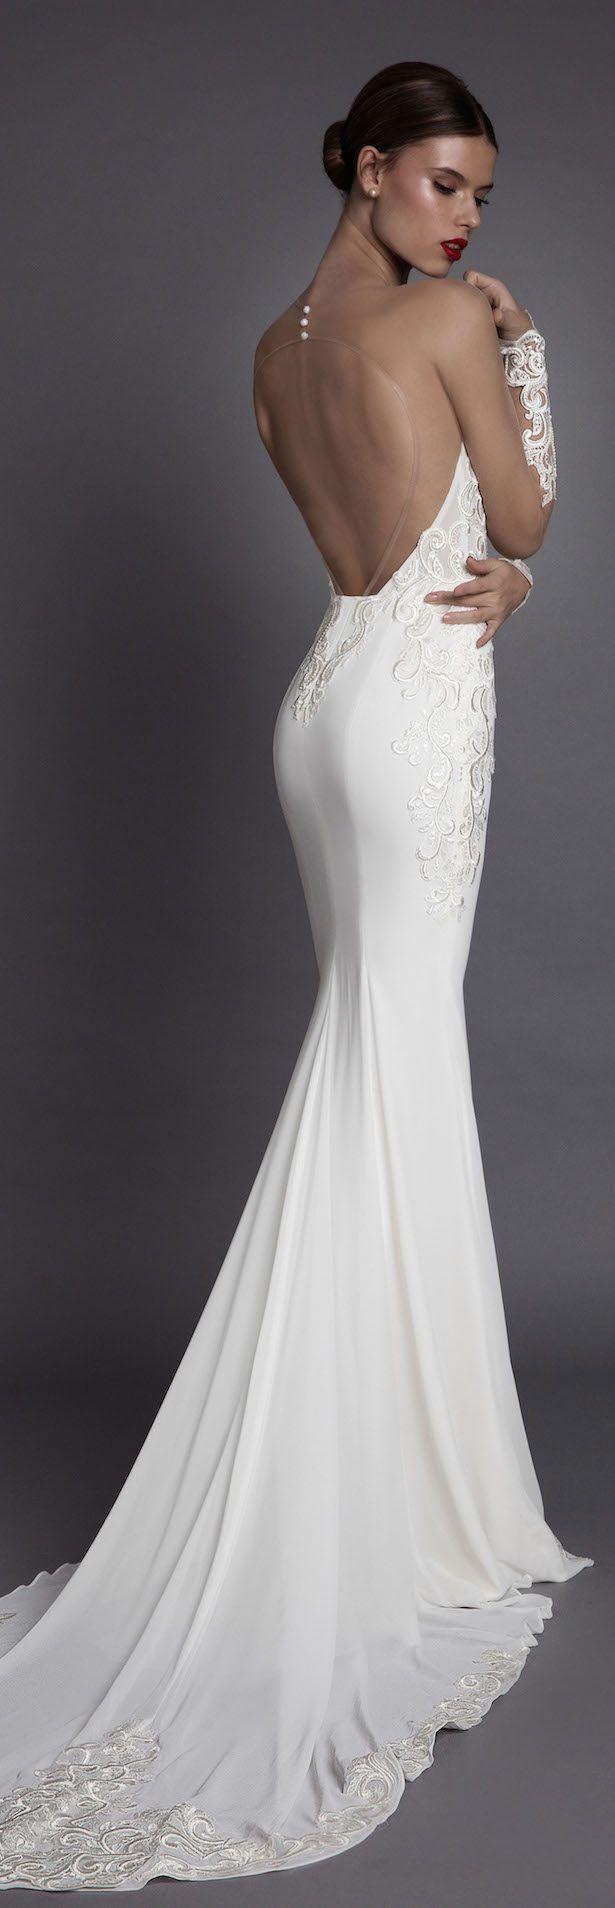 Mariage - Muse By Berta Wedding Dress